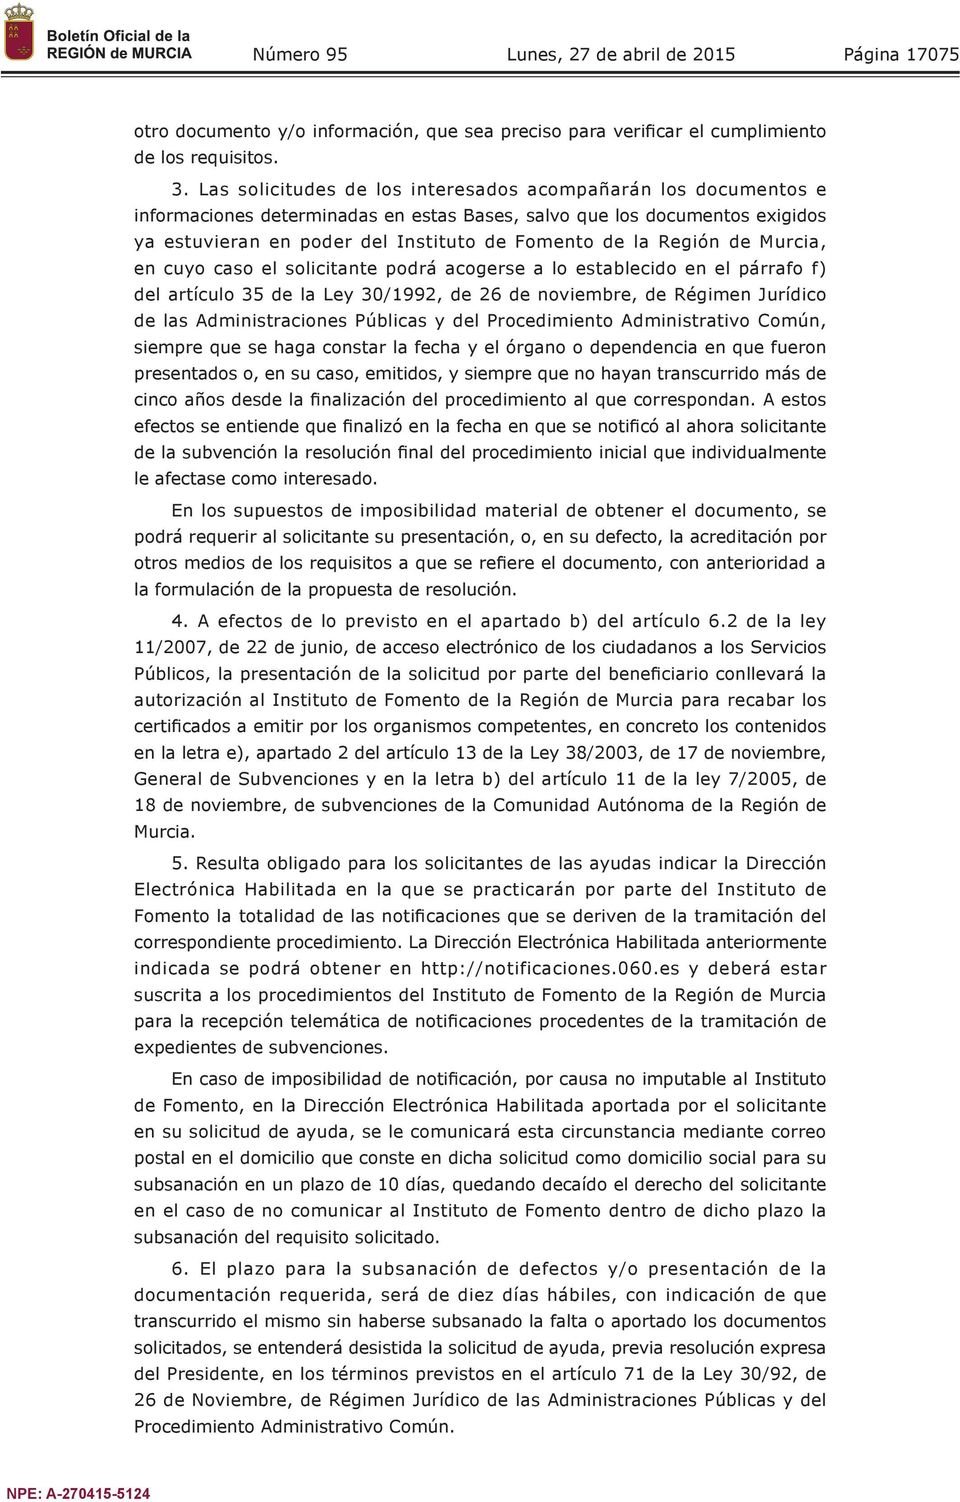 Región de Murcia, en cuyo caso el solicitante podrá acogerse a lo establecido en el párrafo f) del artículo 35 de la Ley 30/1992, de 26 de noviembre, de Régimen Jurídico de las Administraciones